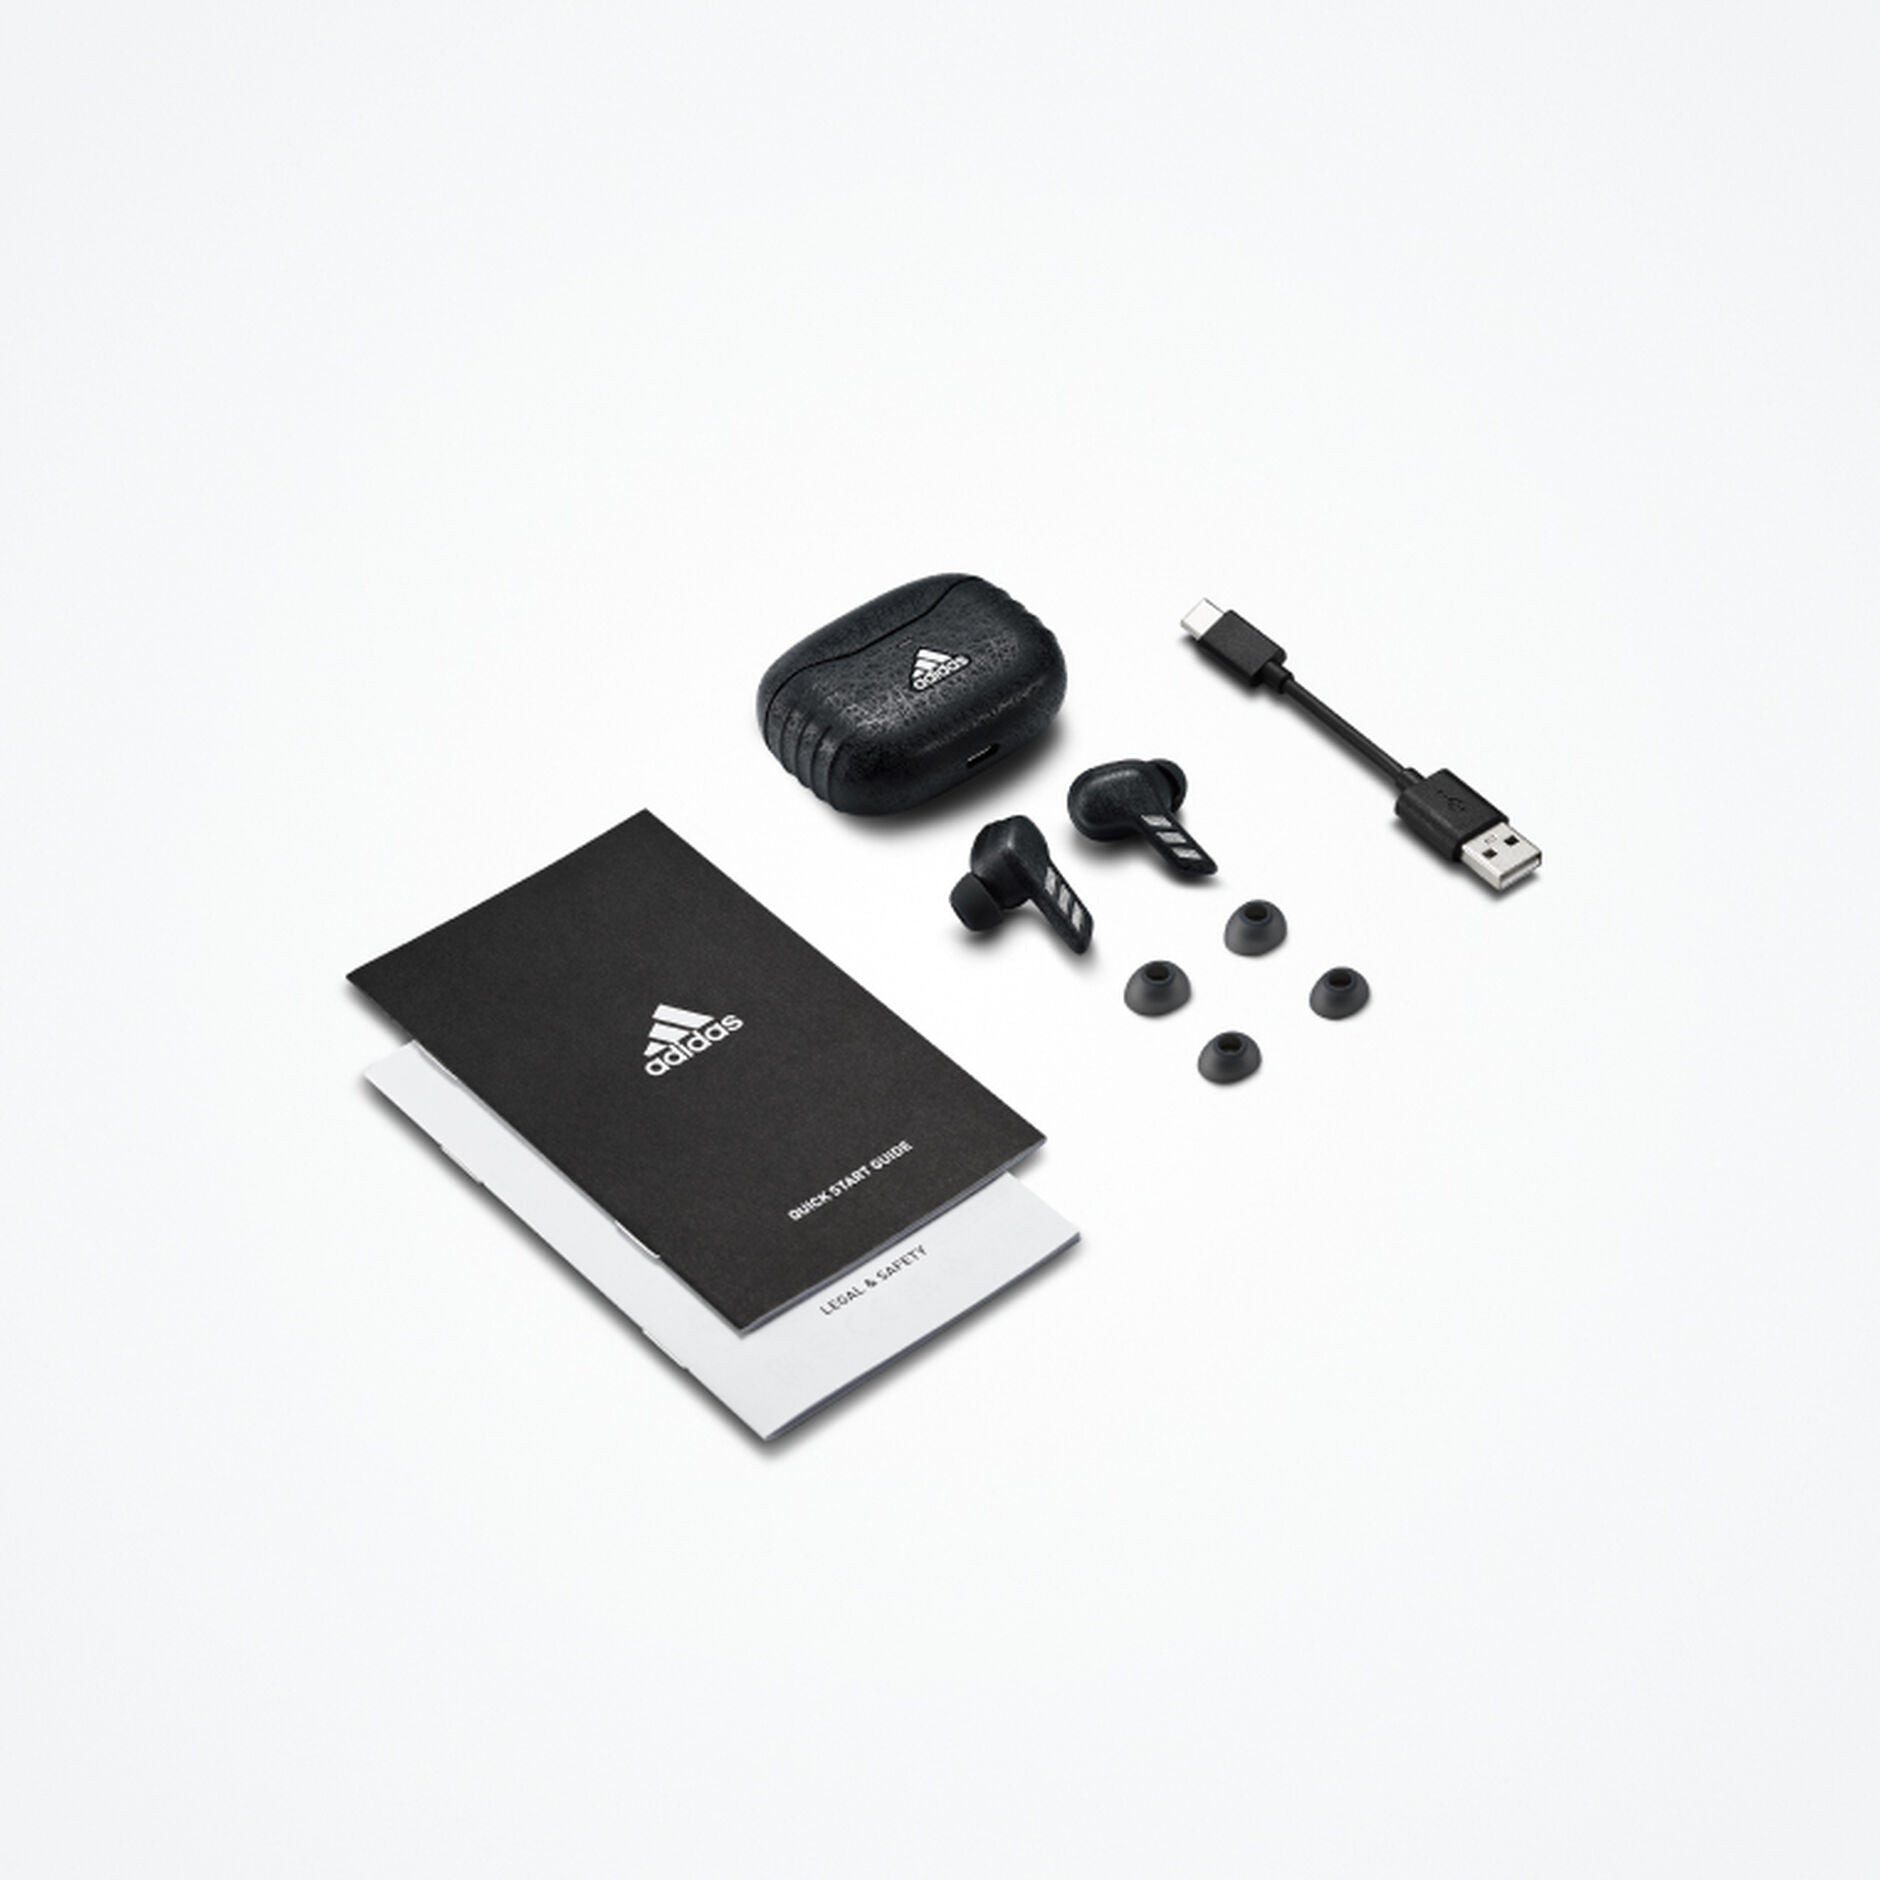 Adidas Z.N.E 01 ANC True Wireless in Ear Earphones - Night Grey - New